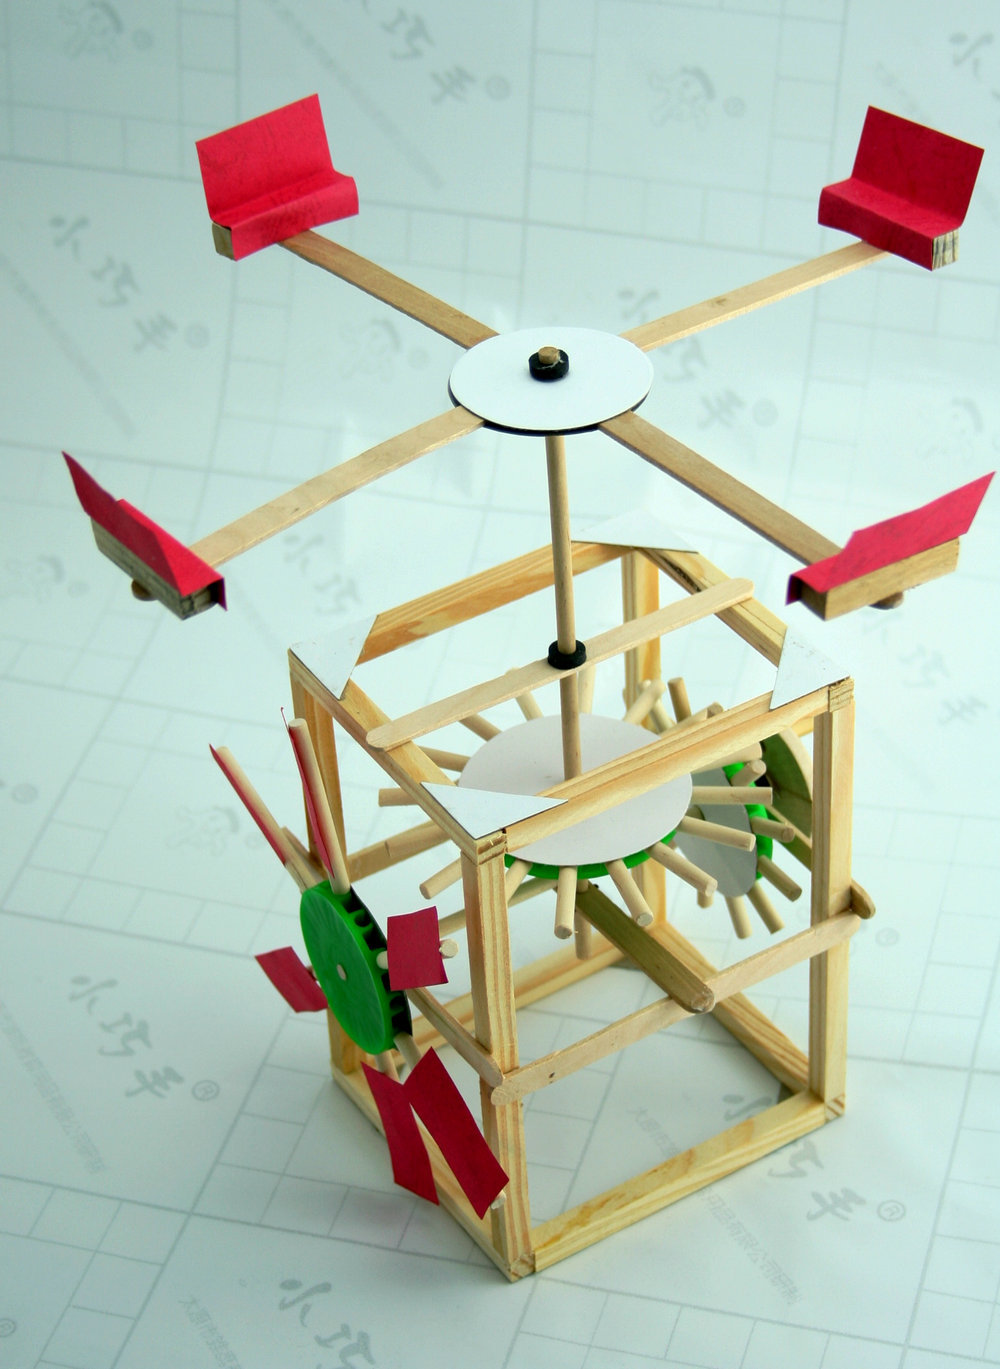 科技小制作手工diy木制玩具教具科普实验活动大风车模型材料